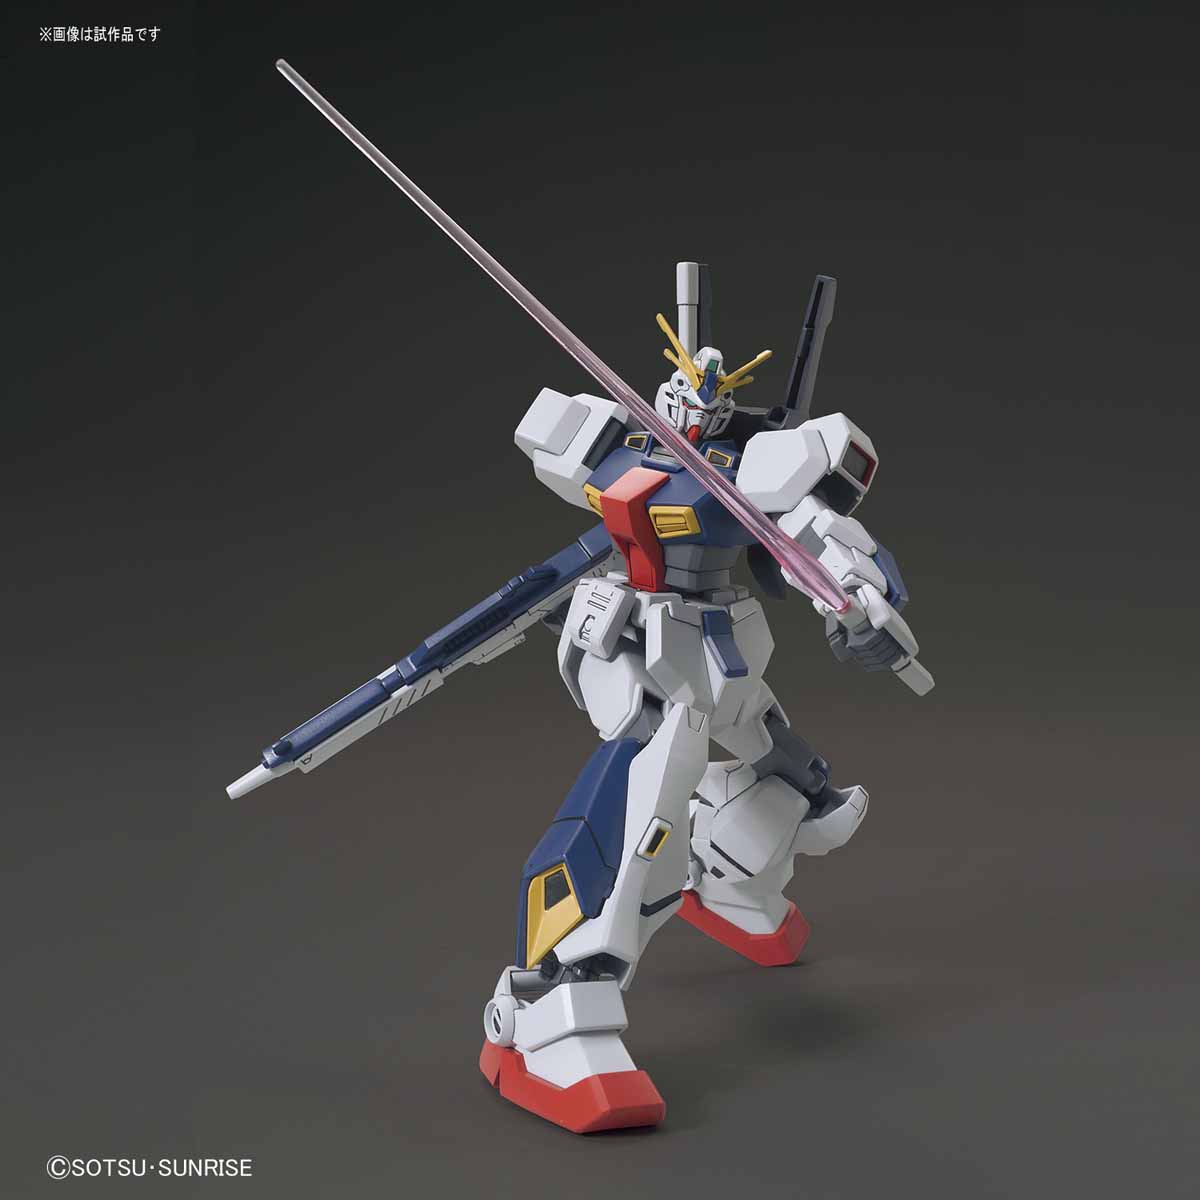 HGUC 1/144 Gundam AN-01 "Tristan" [Gundam Twilight Axis]